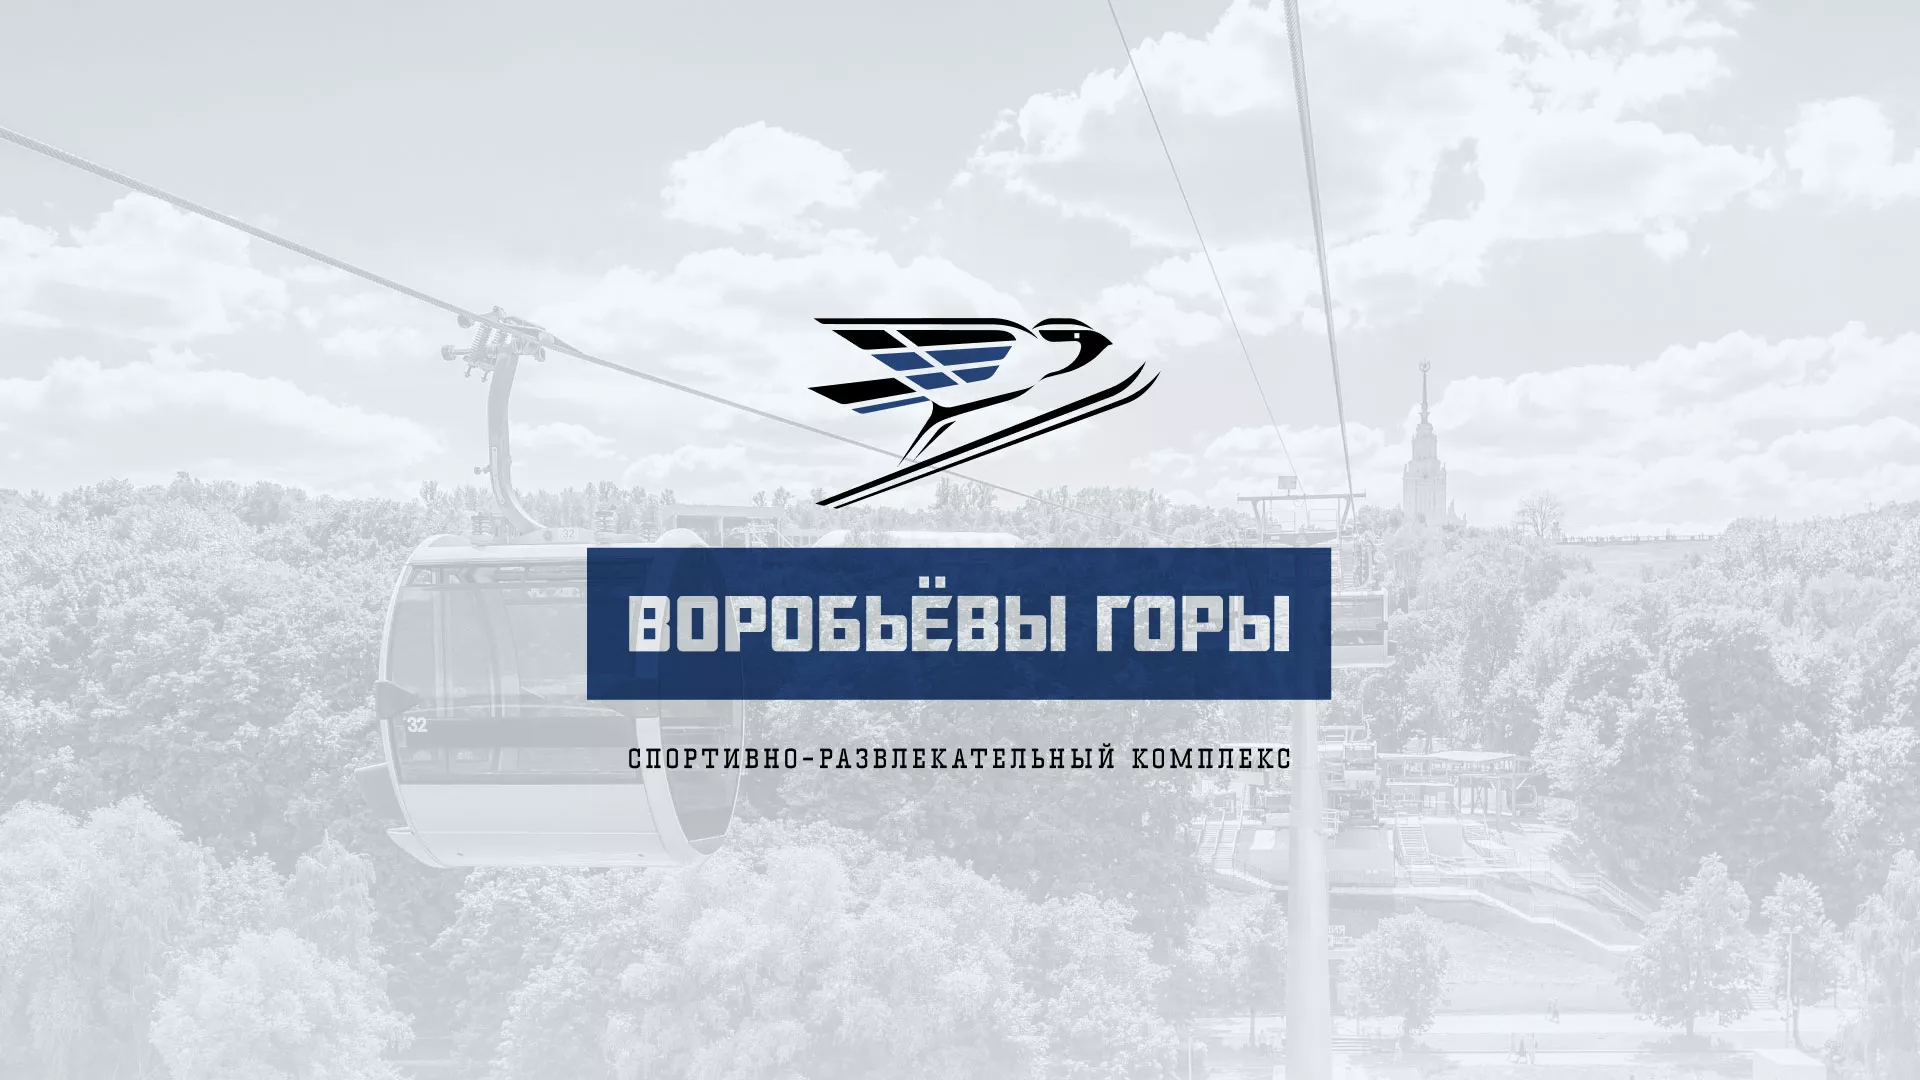 Разработка сайта в Ряжске для спортивно-развлекательного комплекса «Воробьёвы горы»